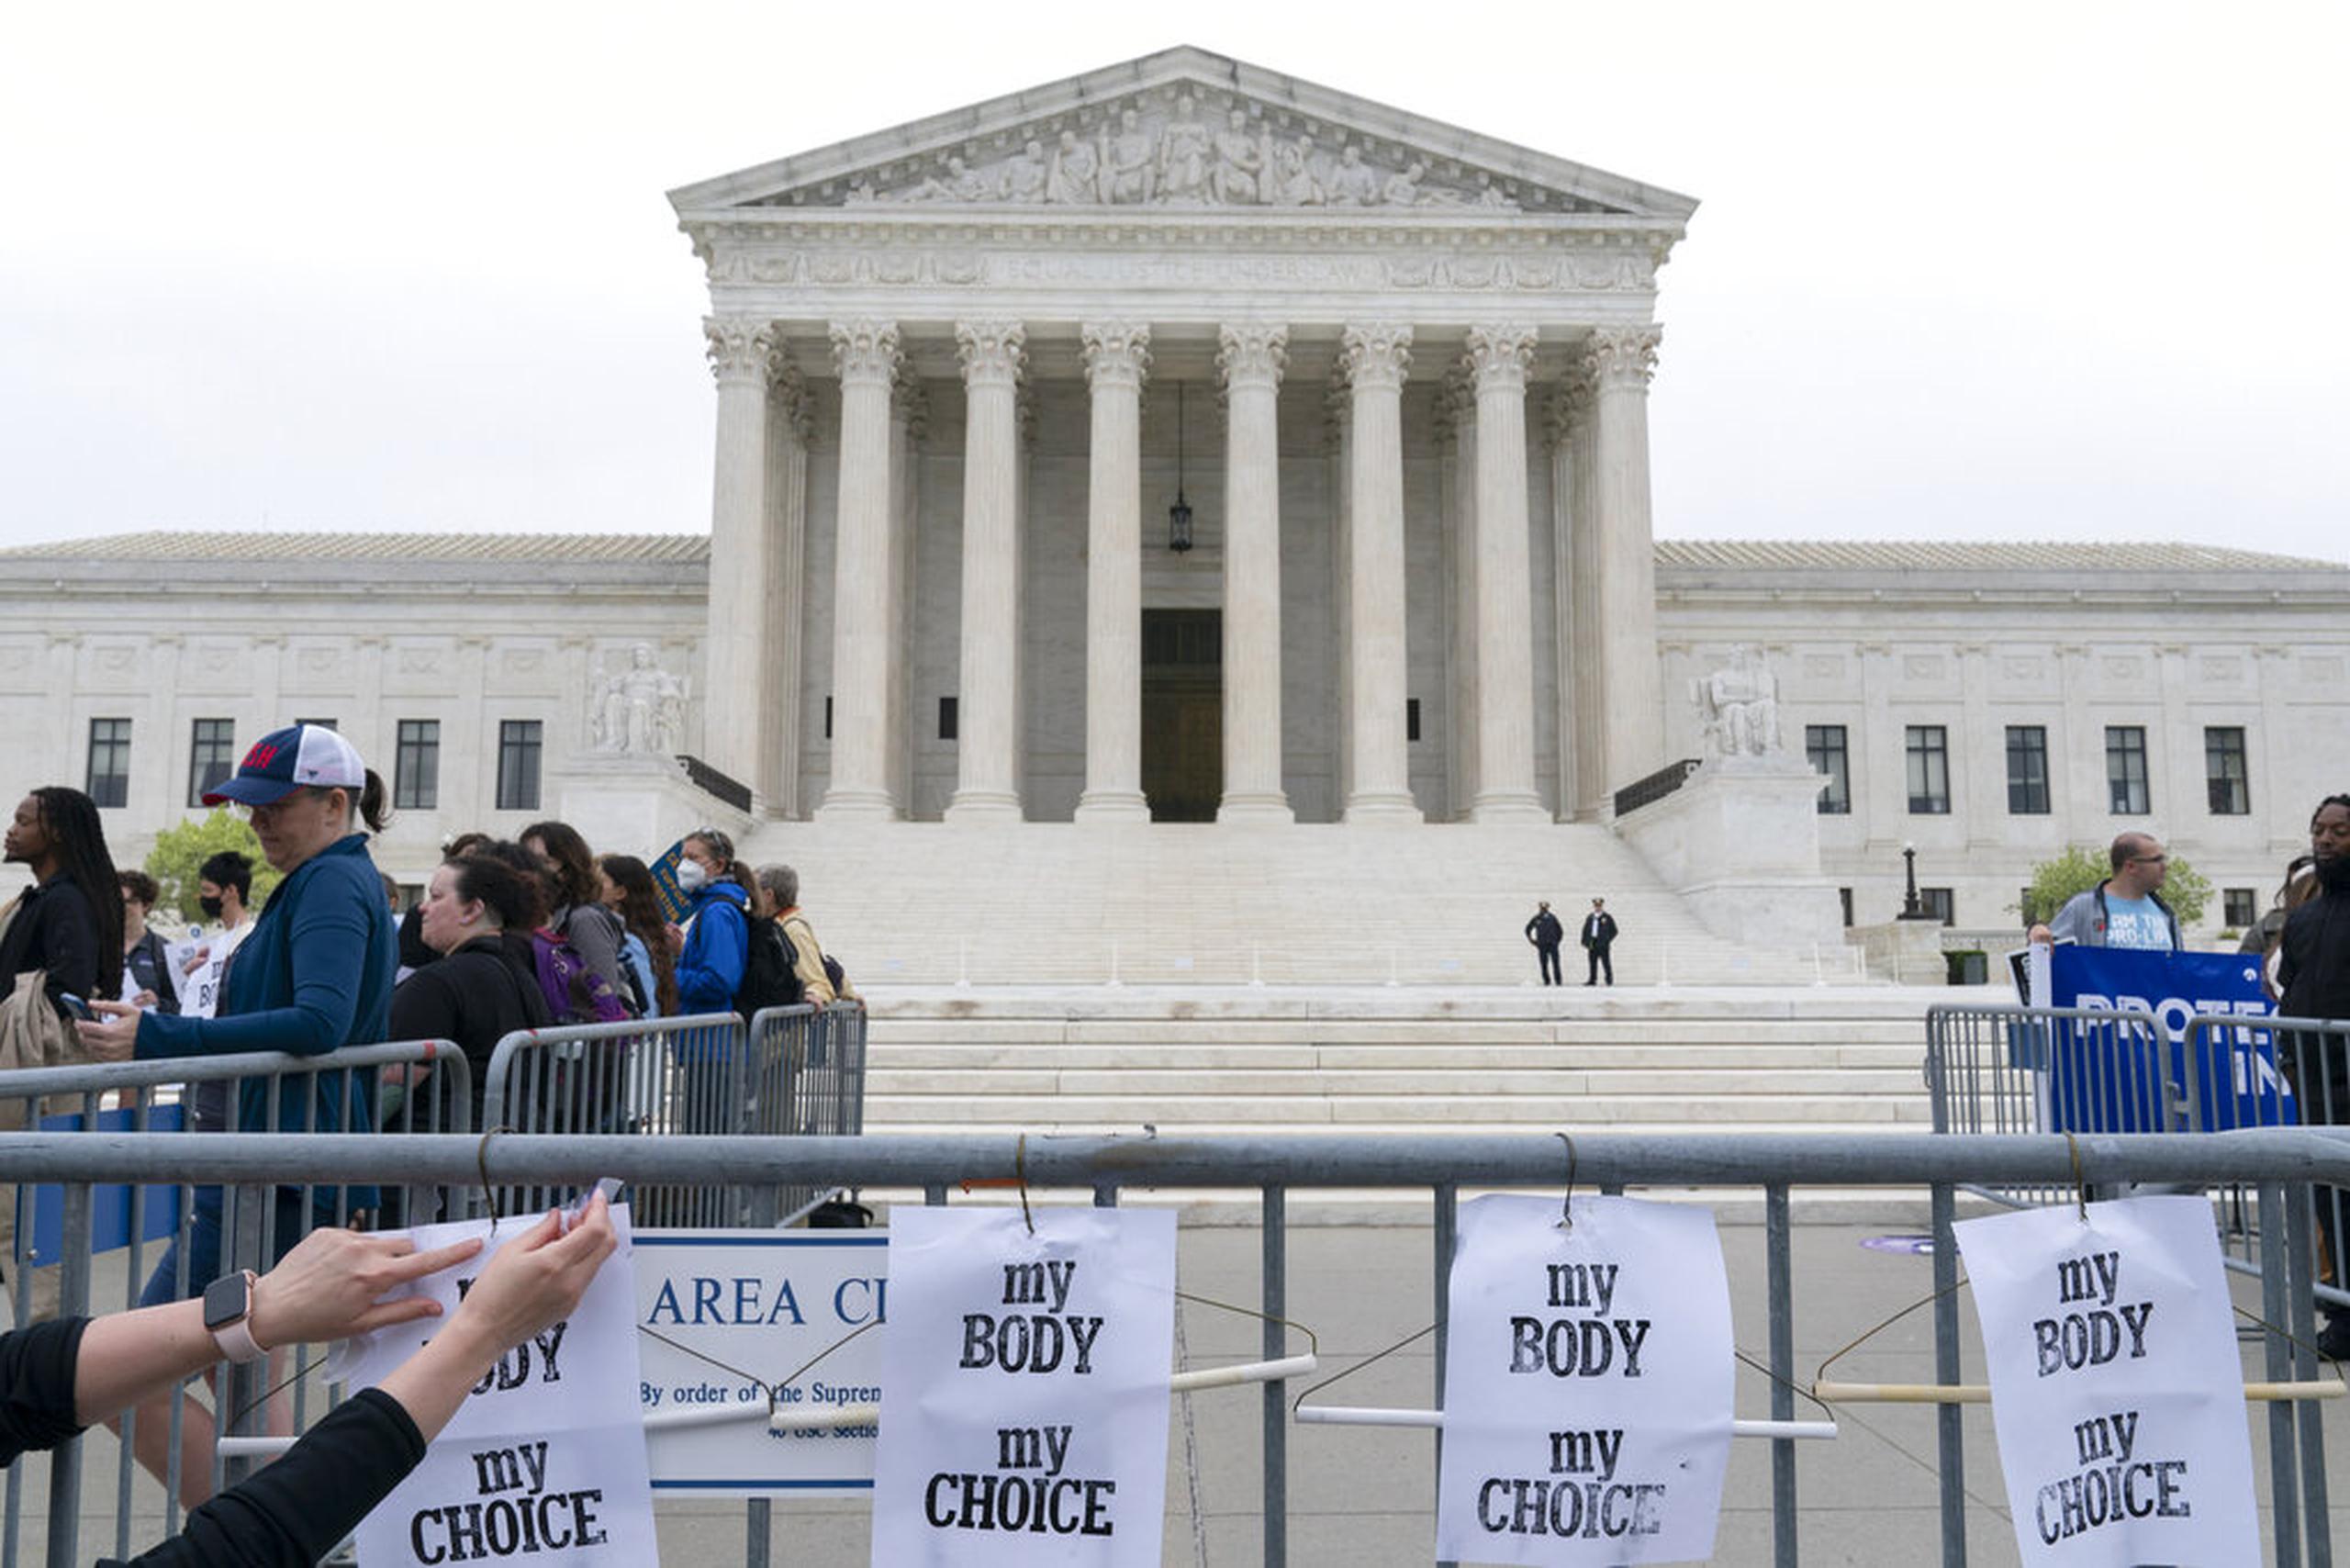 Anterior al fallo judicial del Tribunal Supremo en 1973, el aborto era extensamente legal en apenas cuatro estados y permitido bajo circunstancias limitadas en otros 16.